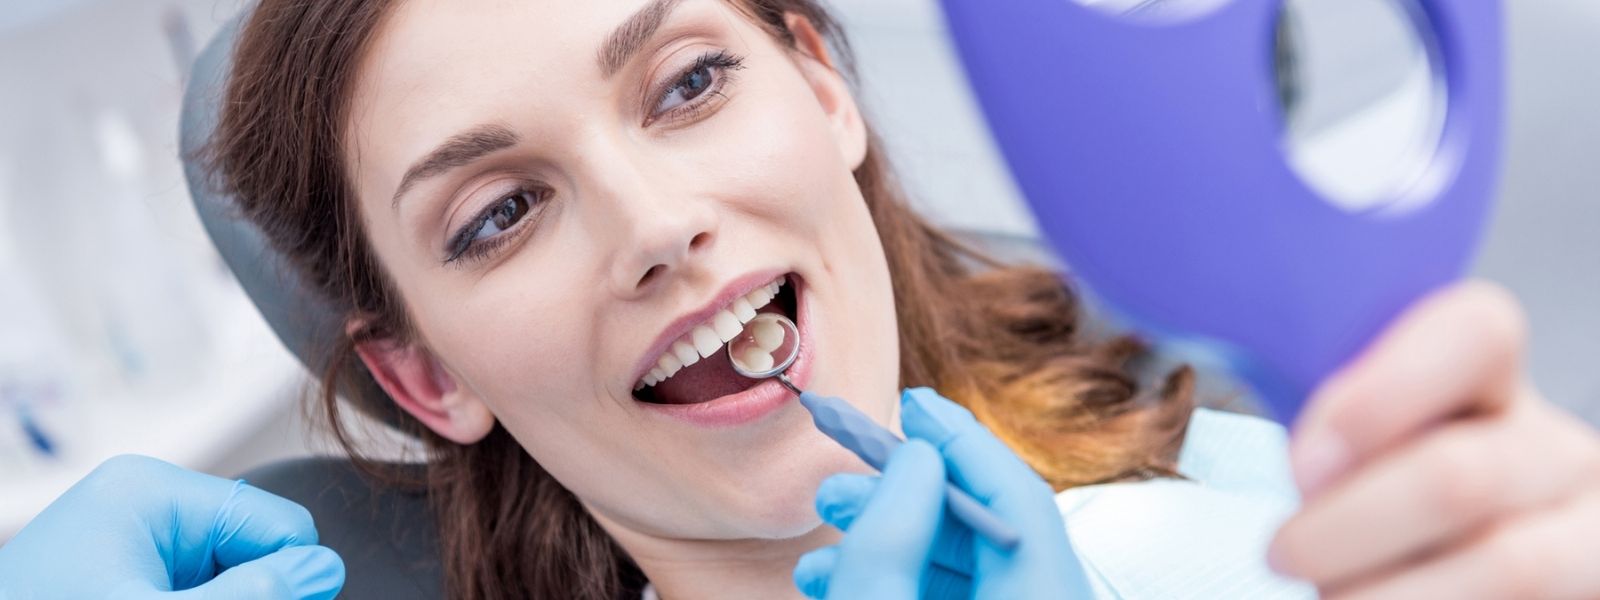 A girl doing her regular dental checkup